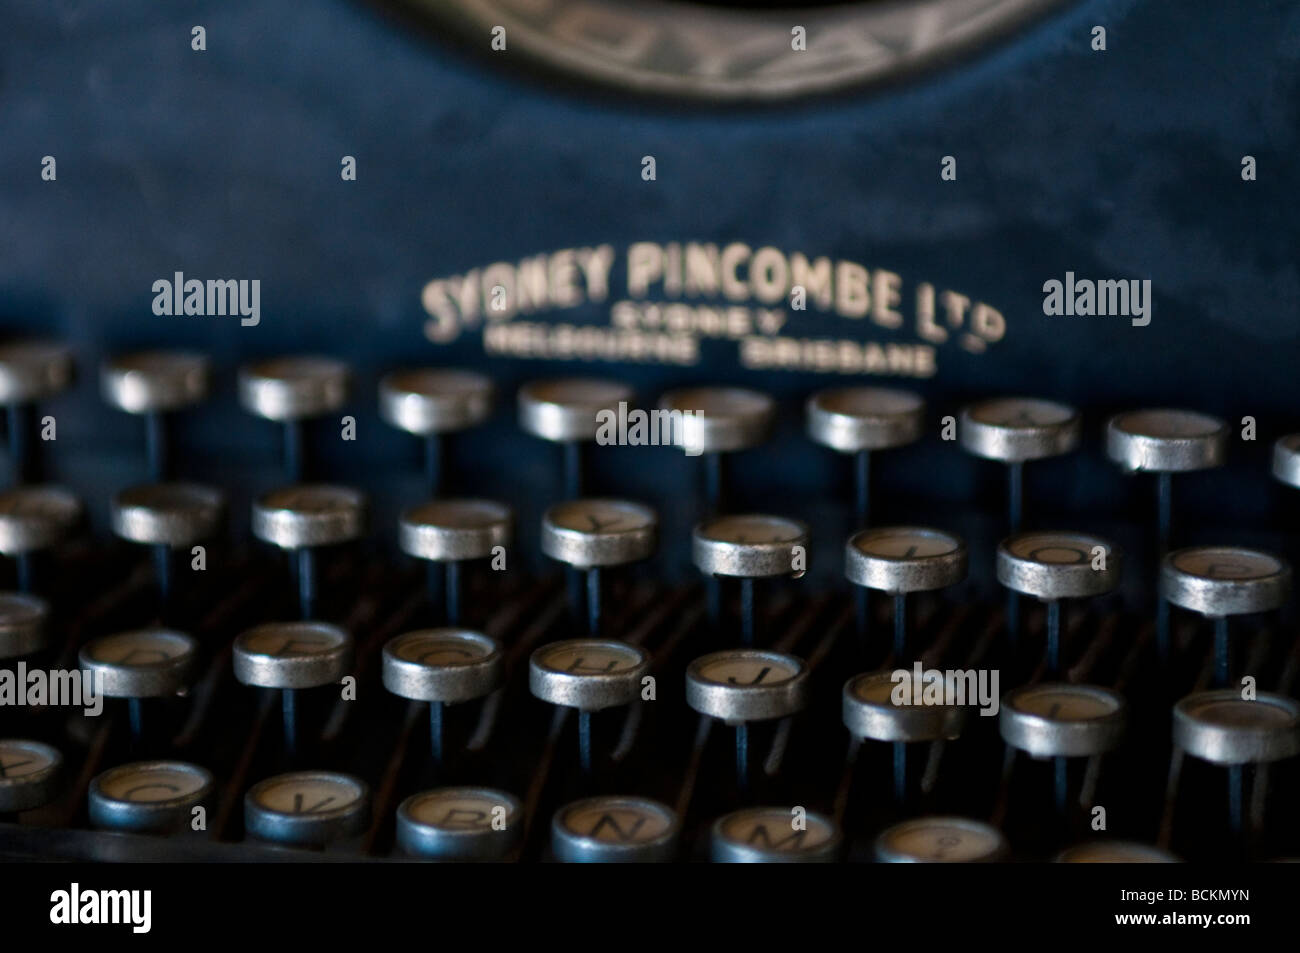 Old typewriter keys Stock Photo